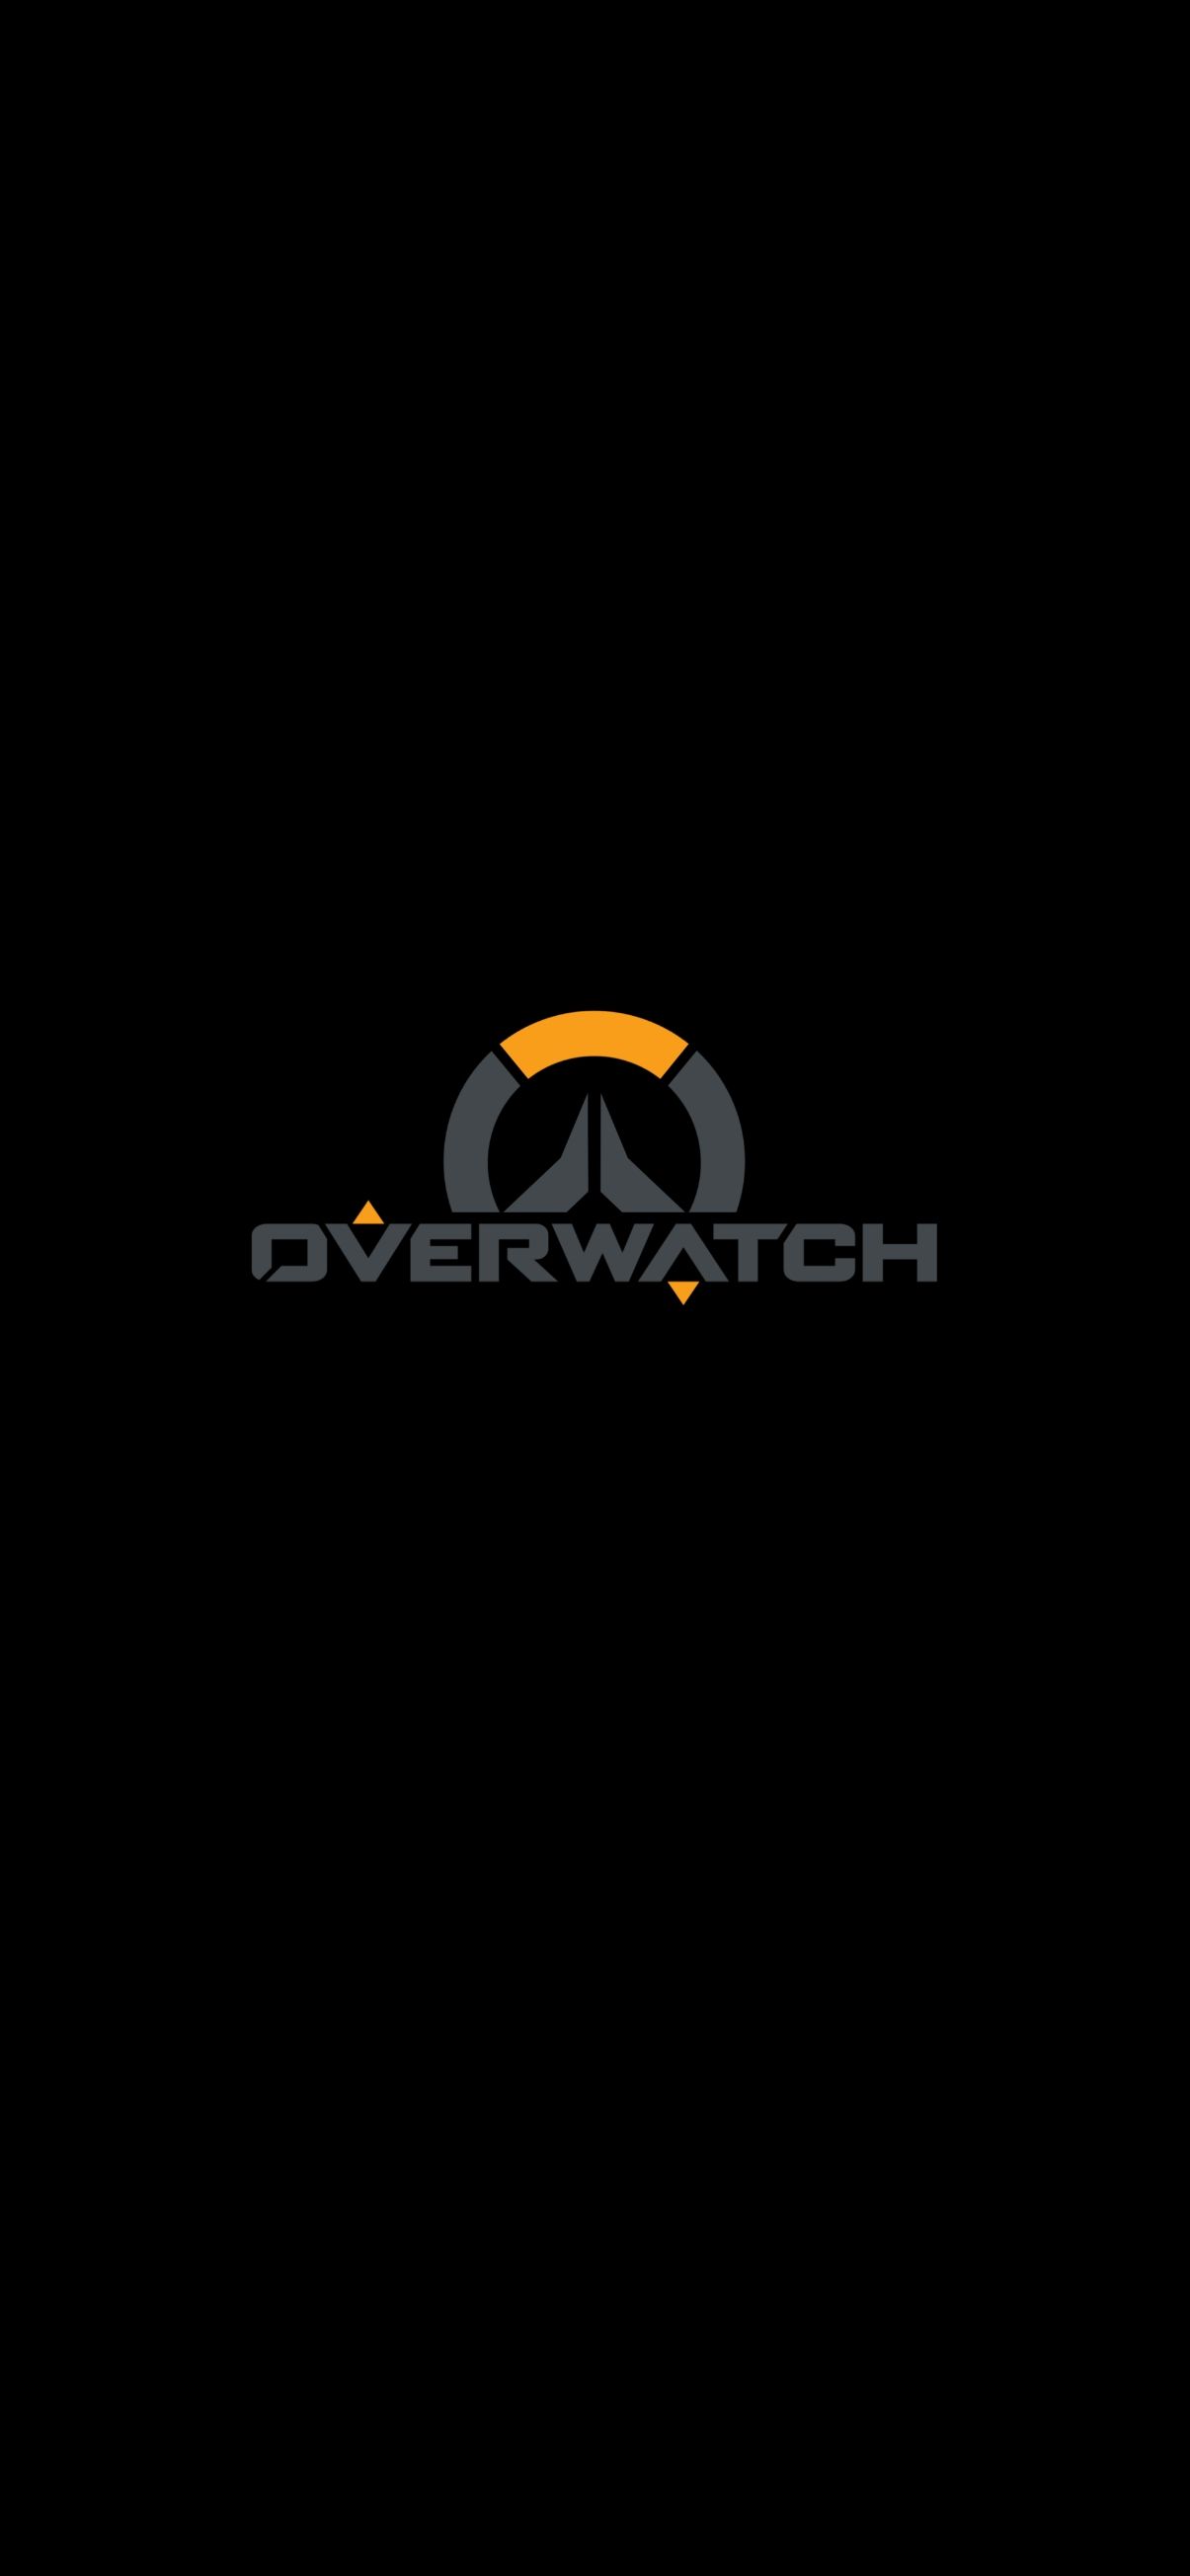 overwatch logo wallpaper mobile. Overwatch wallpaper, Wallpaper, Overwatch